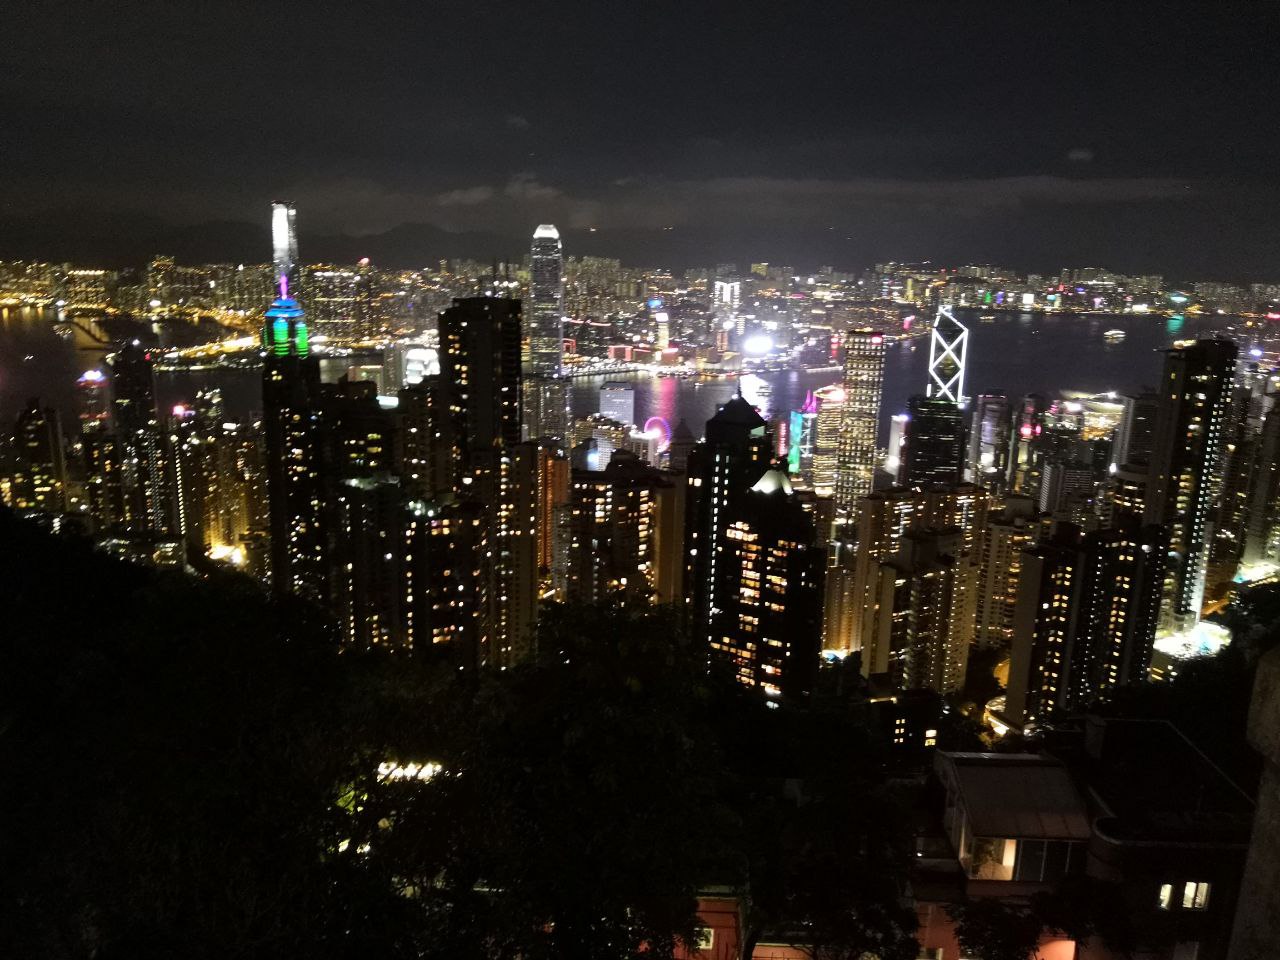 2019年摄于香港。当时的印象：繁华，喧闹，朋克